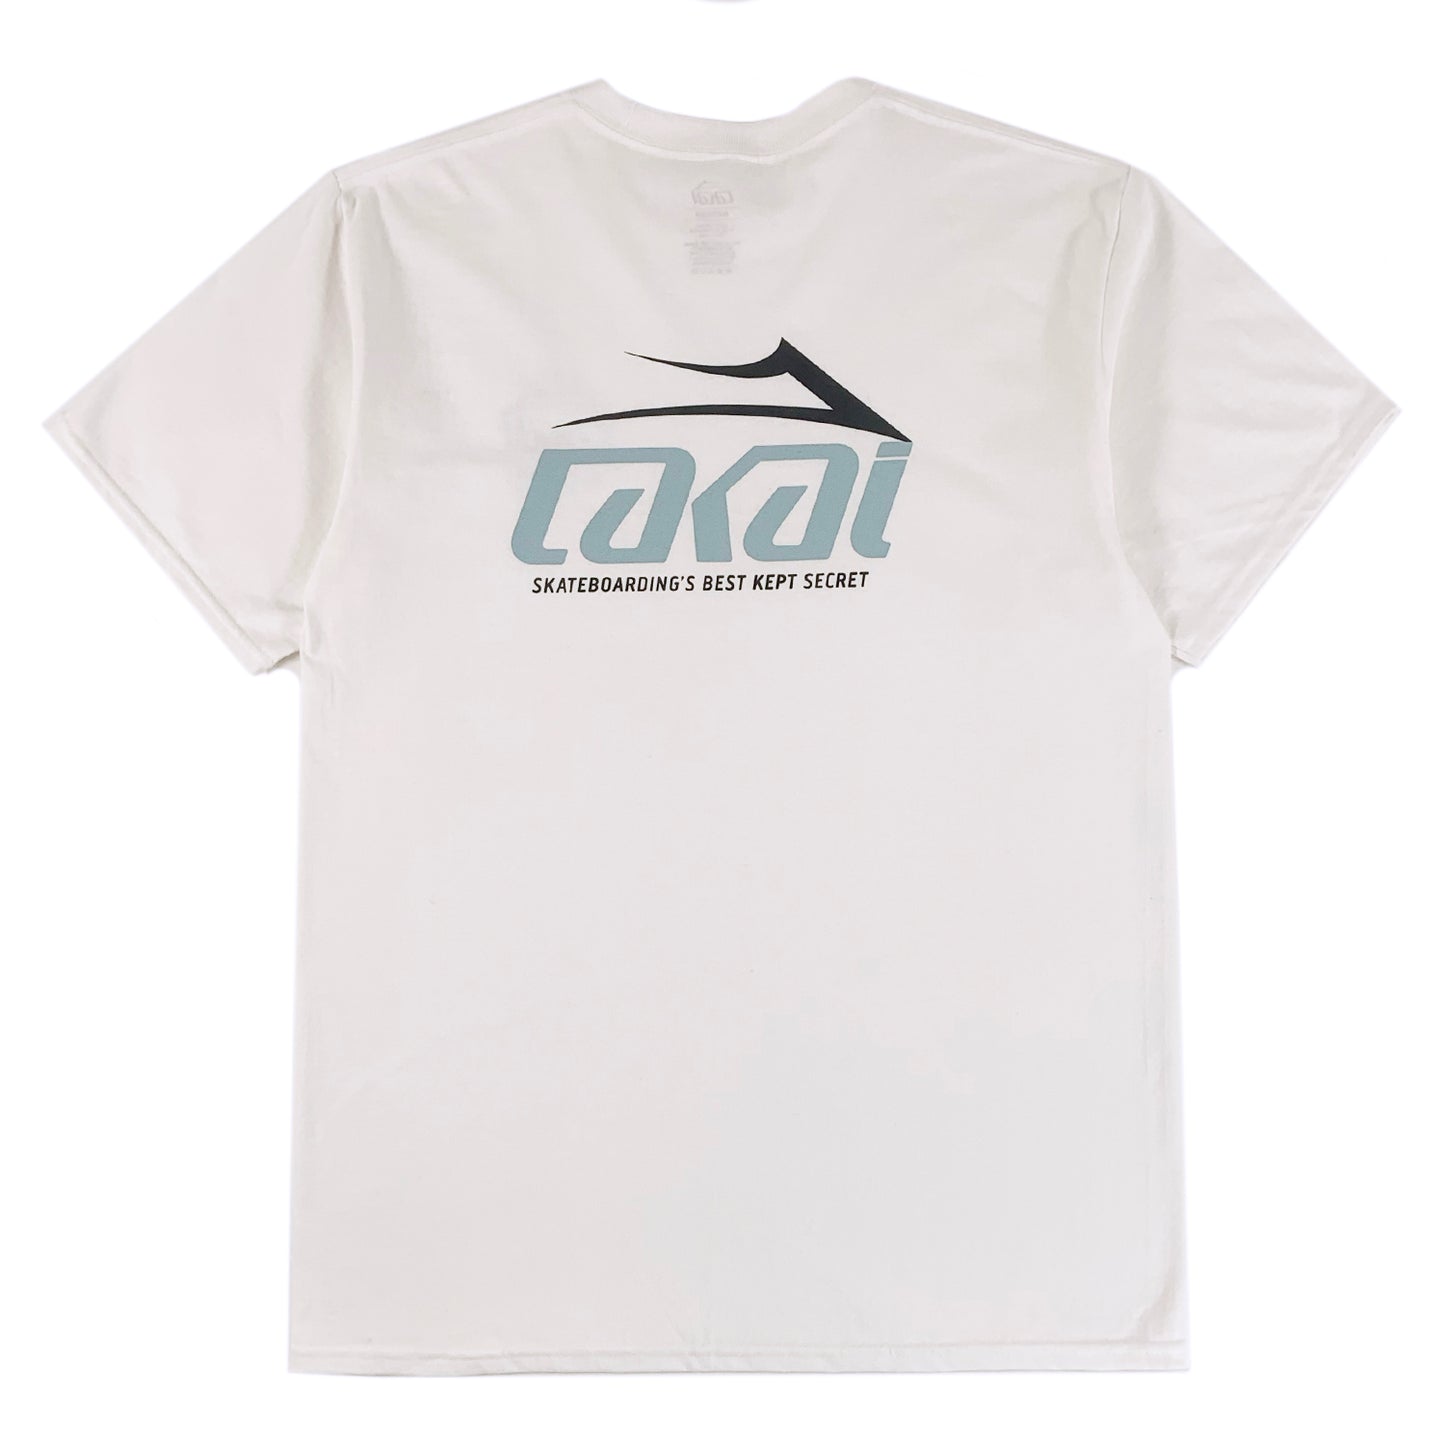 Lakai - Secret - T-Shirt - White - Prime Delux Store